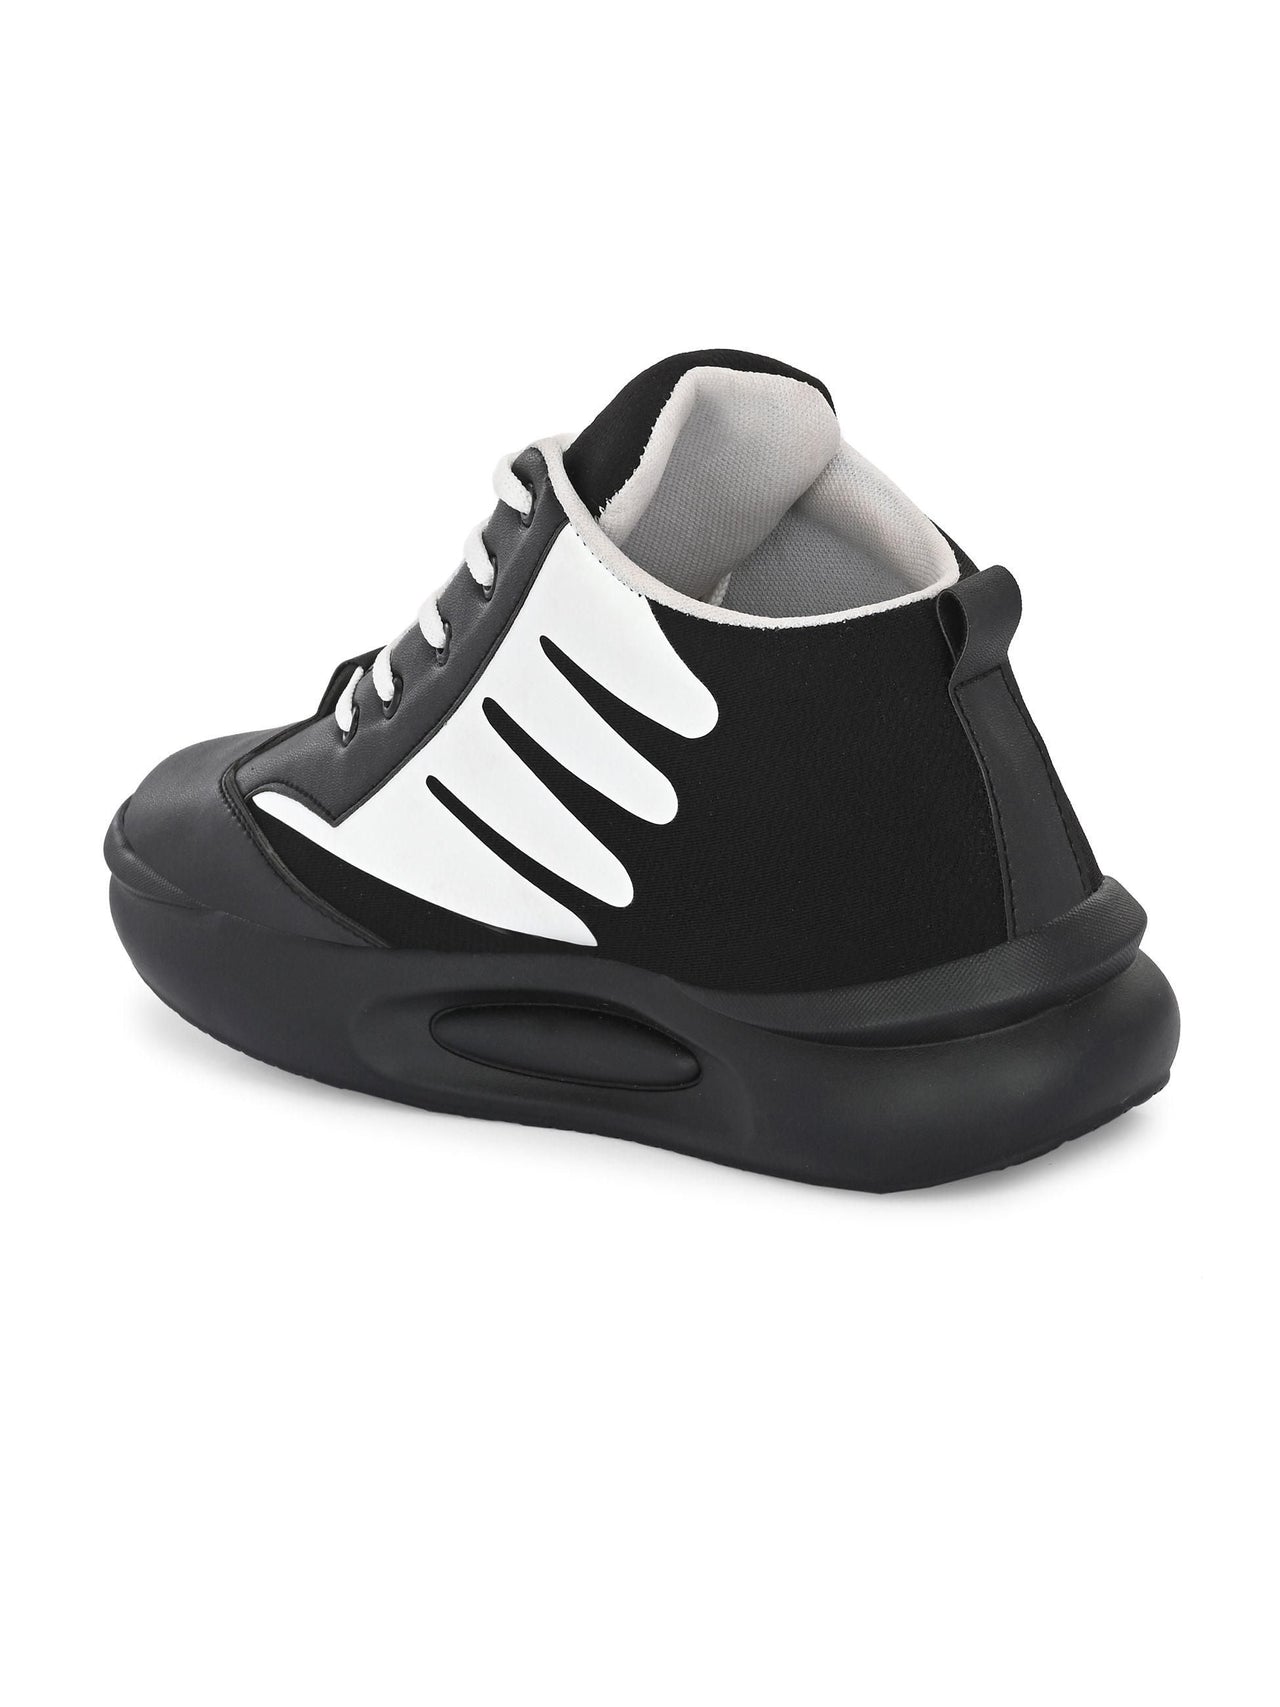 Bucik Men's Black Synthetic Leather Lace-Up Sport Shoe